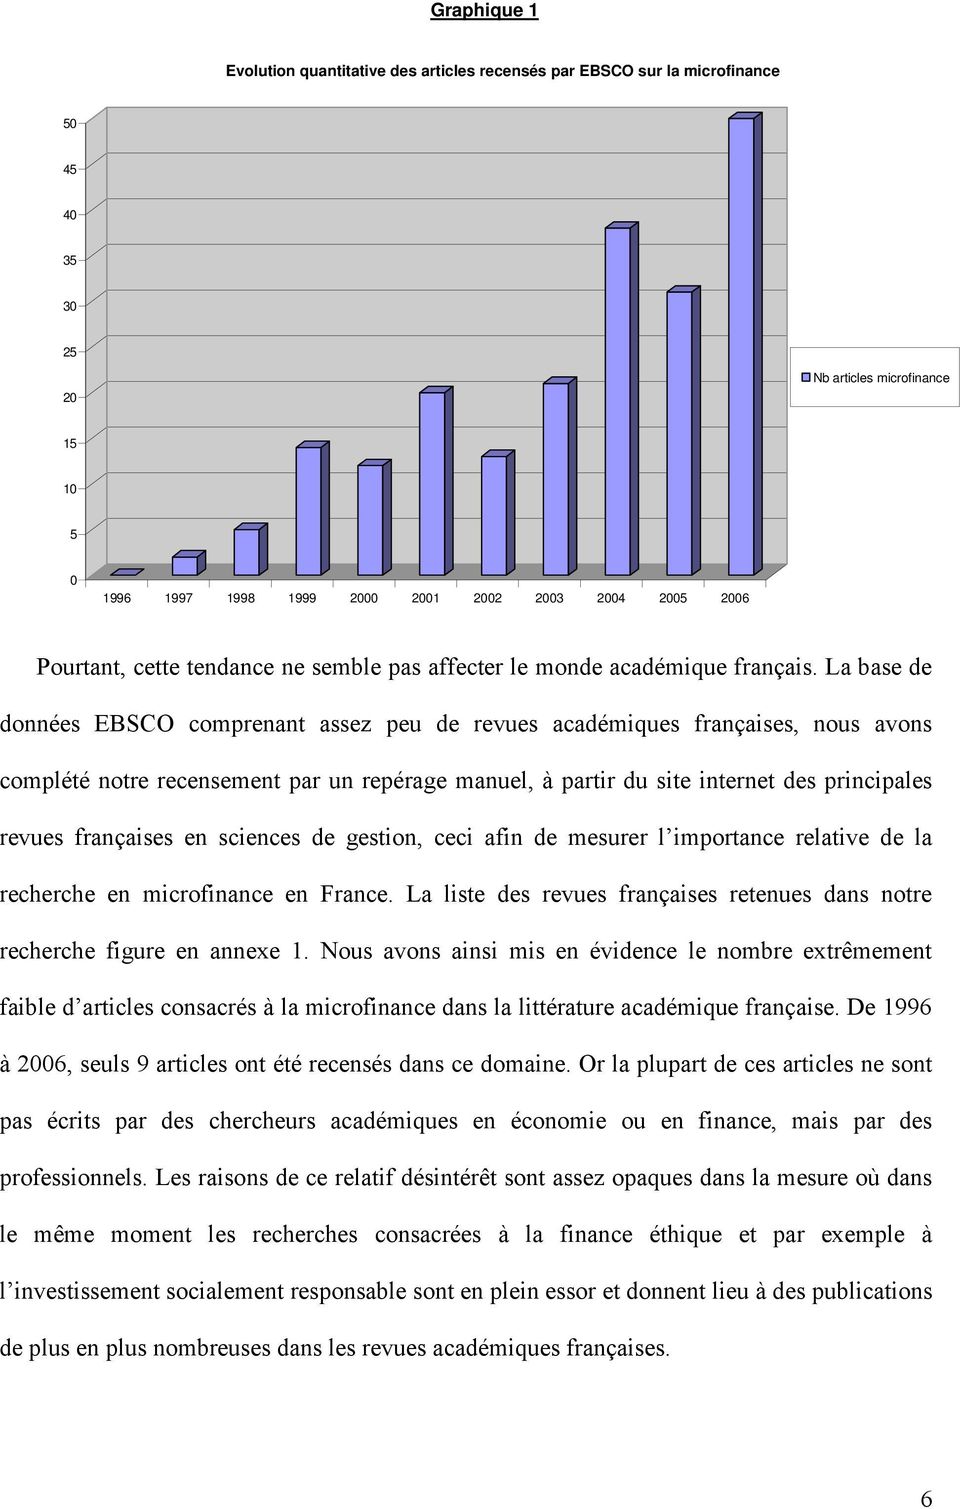 La base de données EBSCO comprenant assez peu de revues académiques françaises, nous avons complété notre recensement par un repérage manuel, à partir du site internet des principales revues